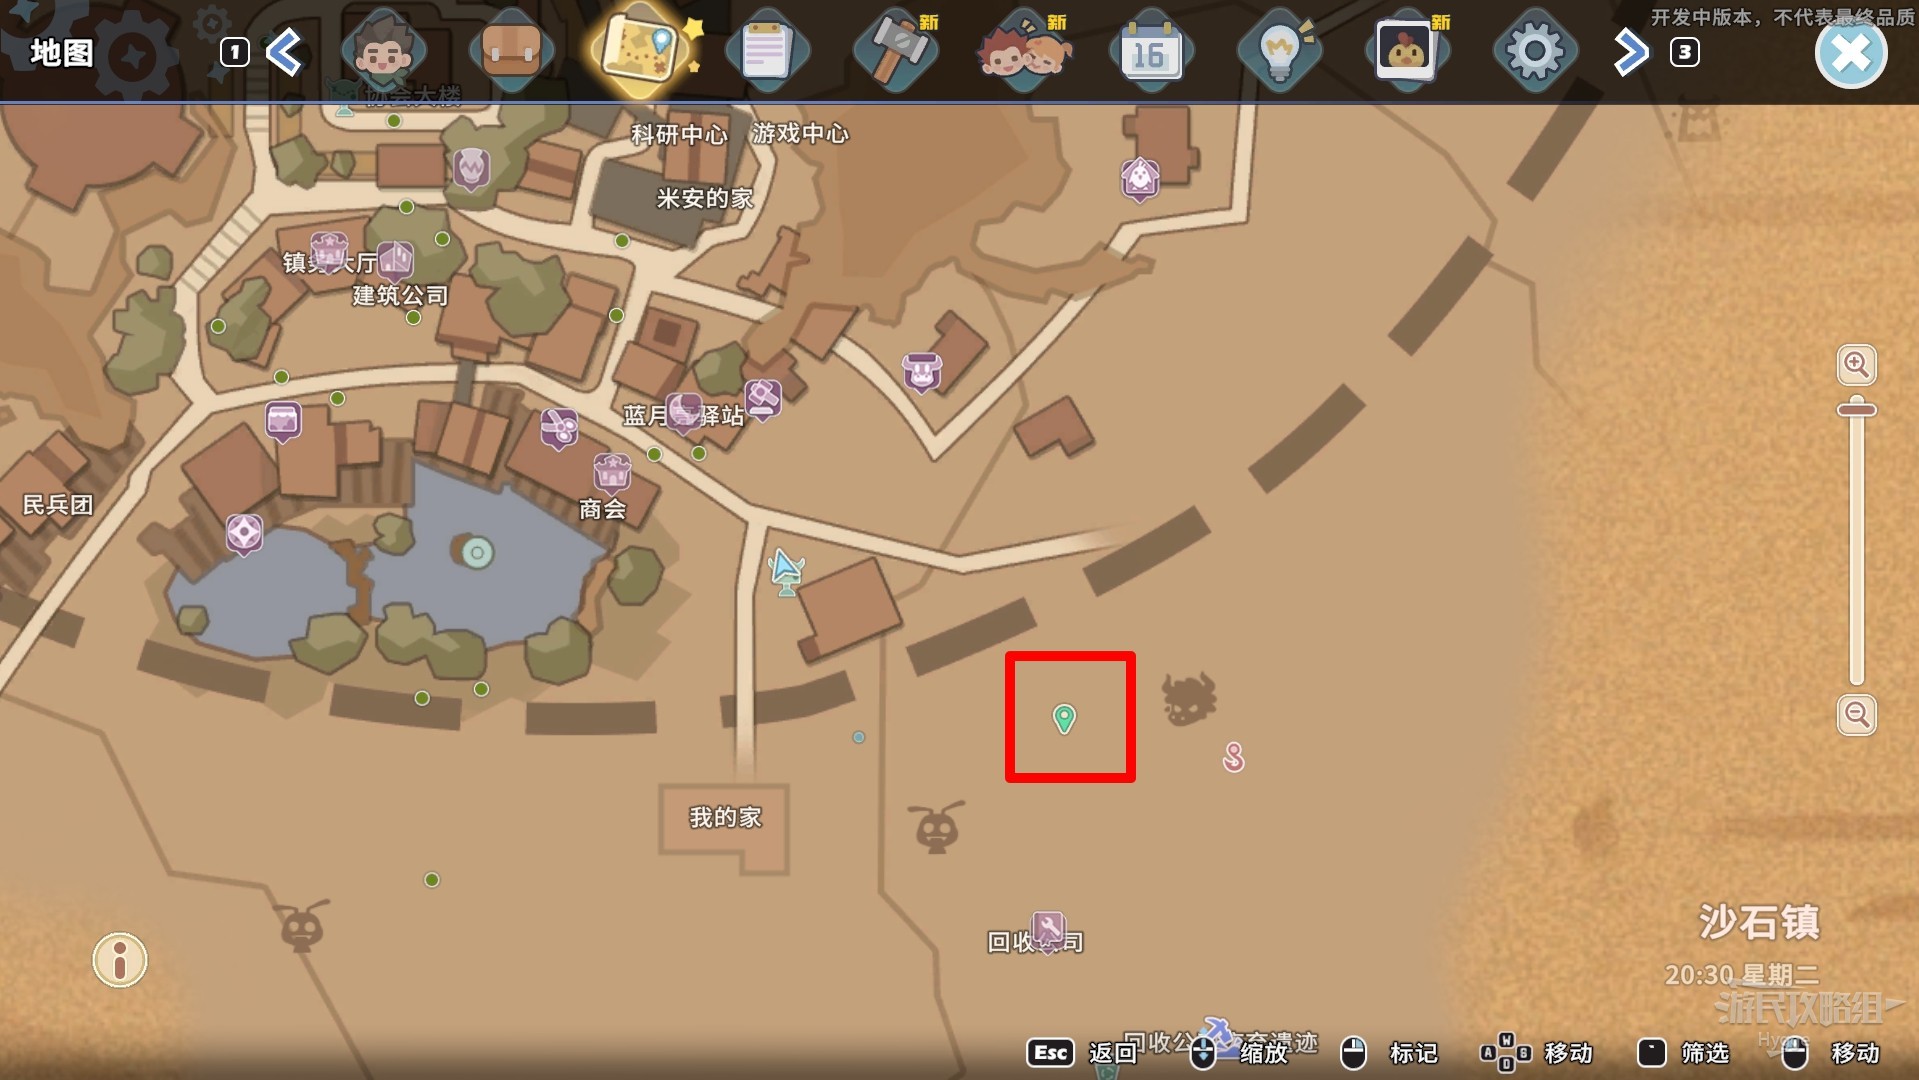 《沙石鎮時光》新手入門攻略 遊戲系統及玩法介紹